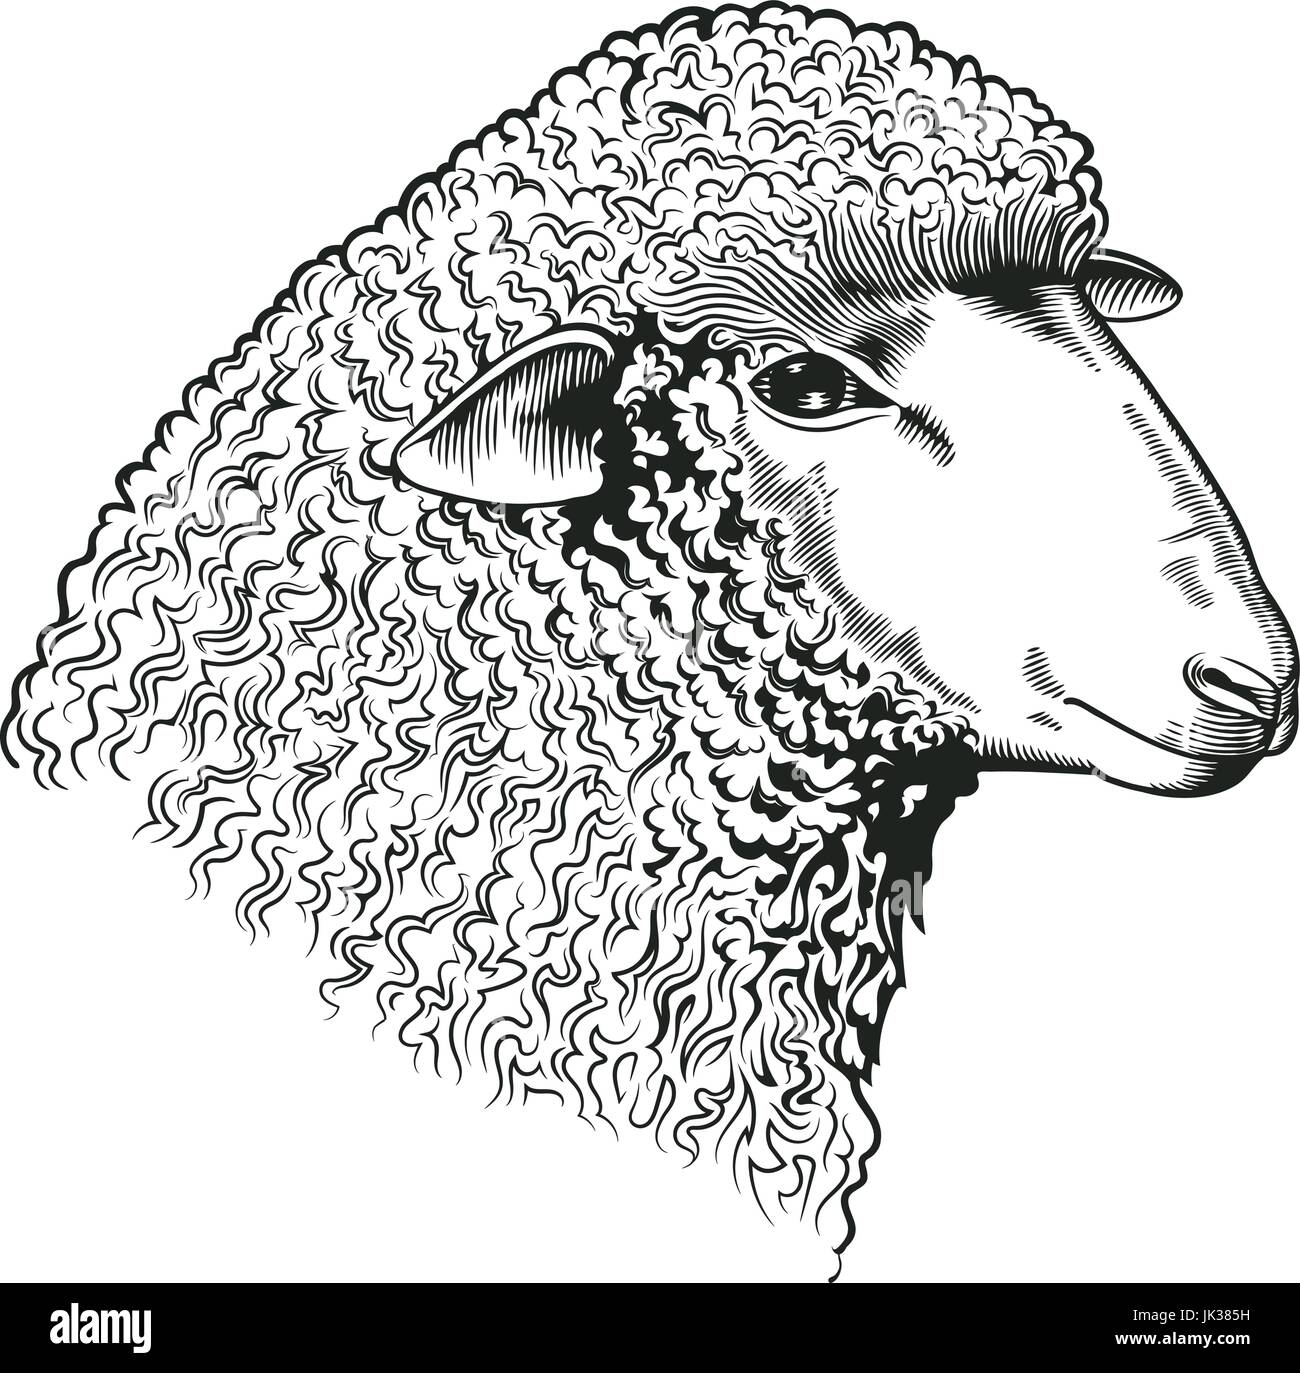 Têtes de moutons dessiné dans le style de gravure. Des animaux ruminants d'isolé sur fond blanc. Vector illustration de l'identité du marché agricole, boucherie et produits en laine, logo, bannière publicitaire. Illustration de Vecteur